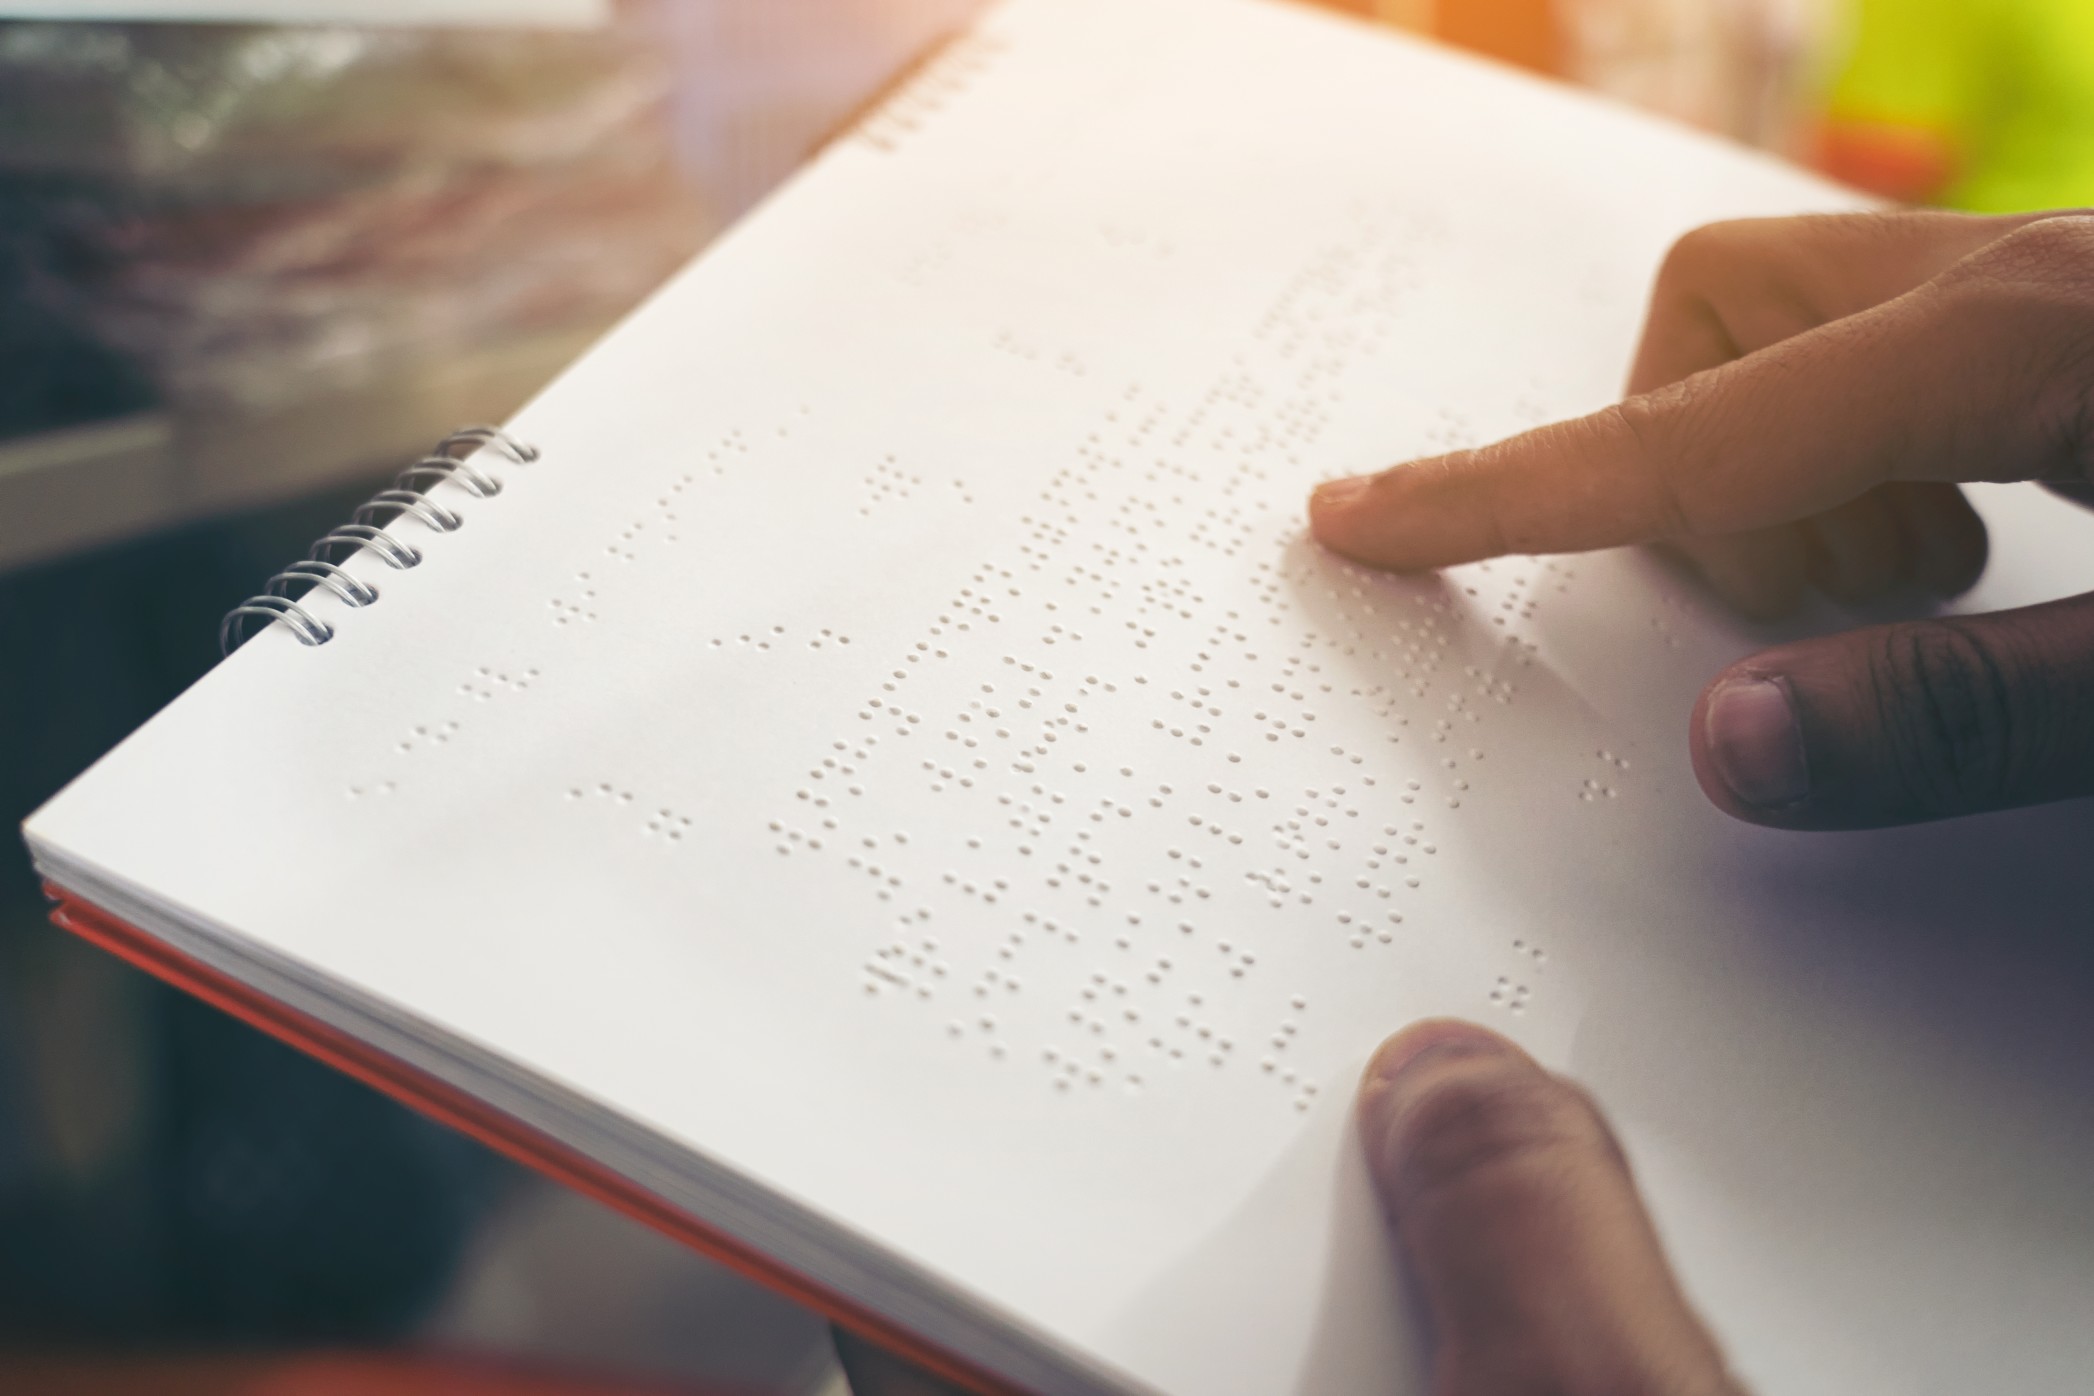 Τα πρώτα εστιατόρια και ξενοδοχεία με καταλόγους στη γραφή Braille λειτουργούν στη Ρόδο.